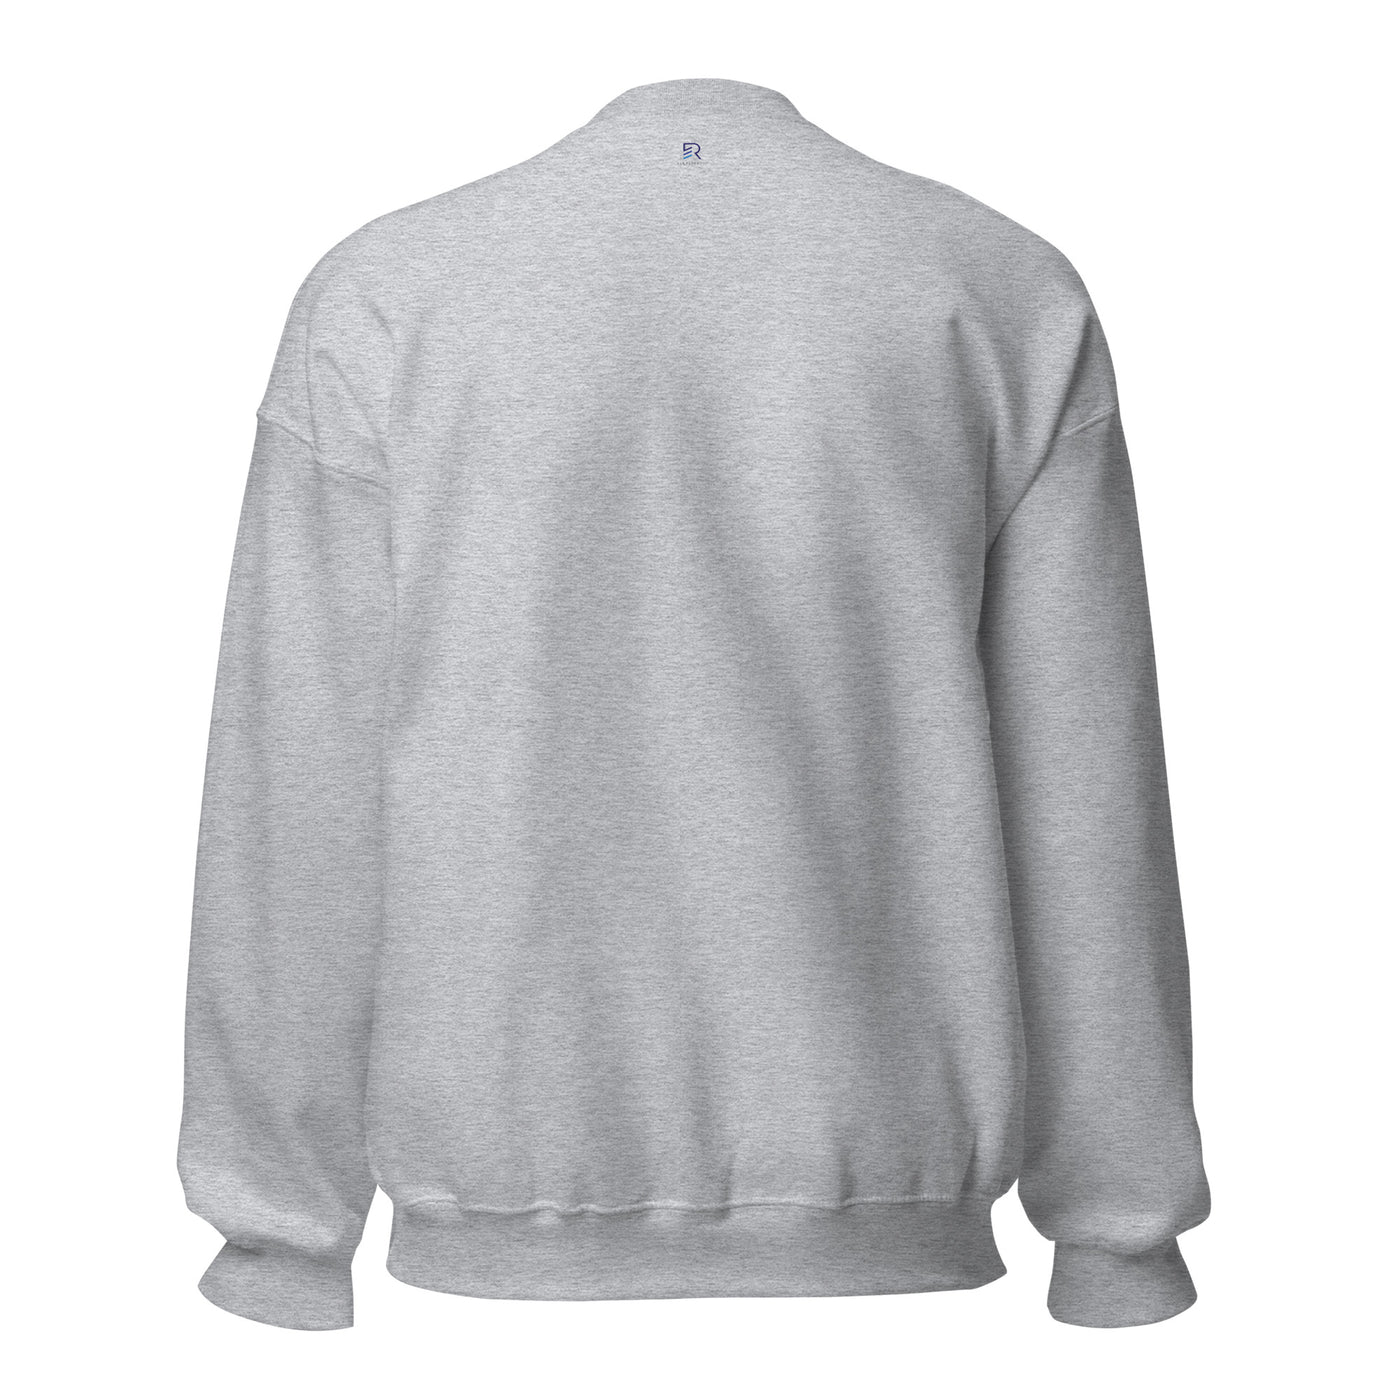 Men's Crew Neck Sport Gray Sweatshirt - Be Focused Proverbs 425